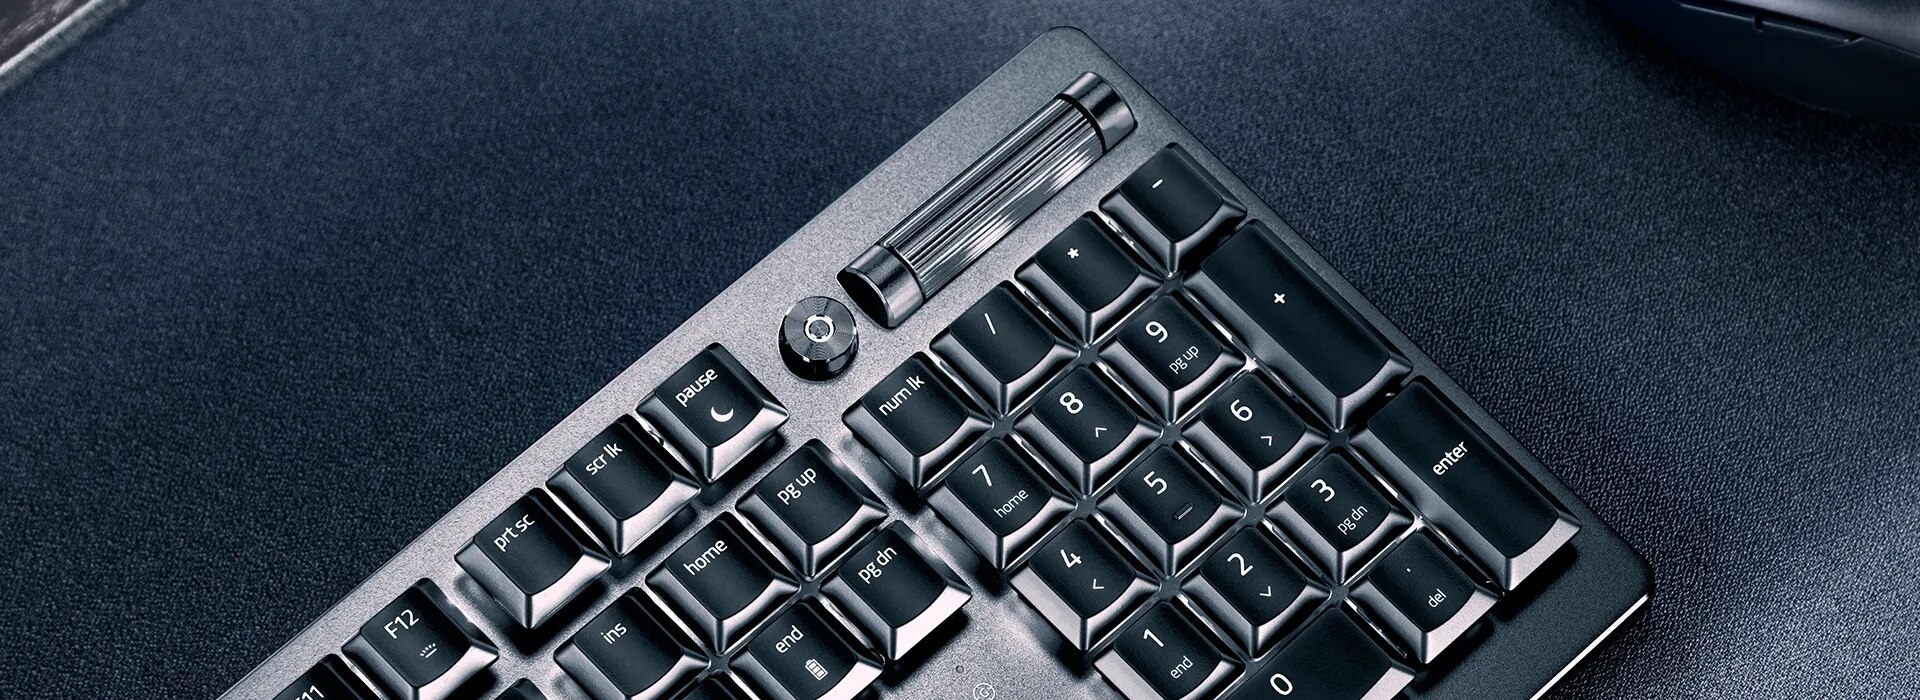 Razer DeathStalker V2 Pro - Clicky Optical Switch - US - Black Keyboards